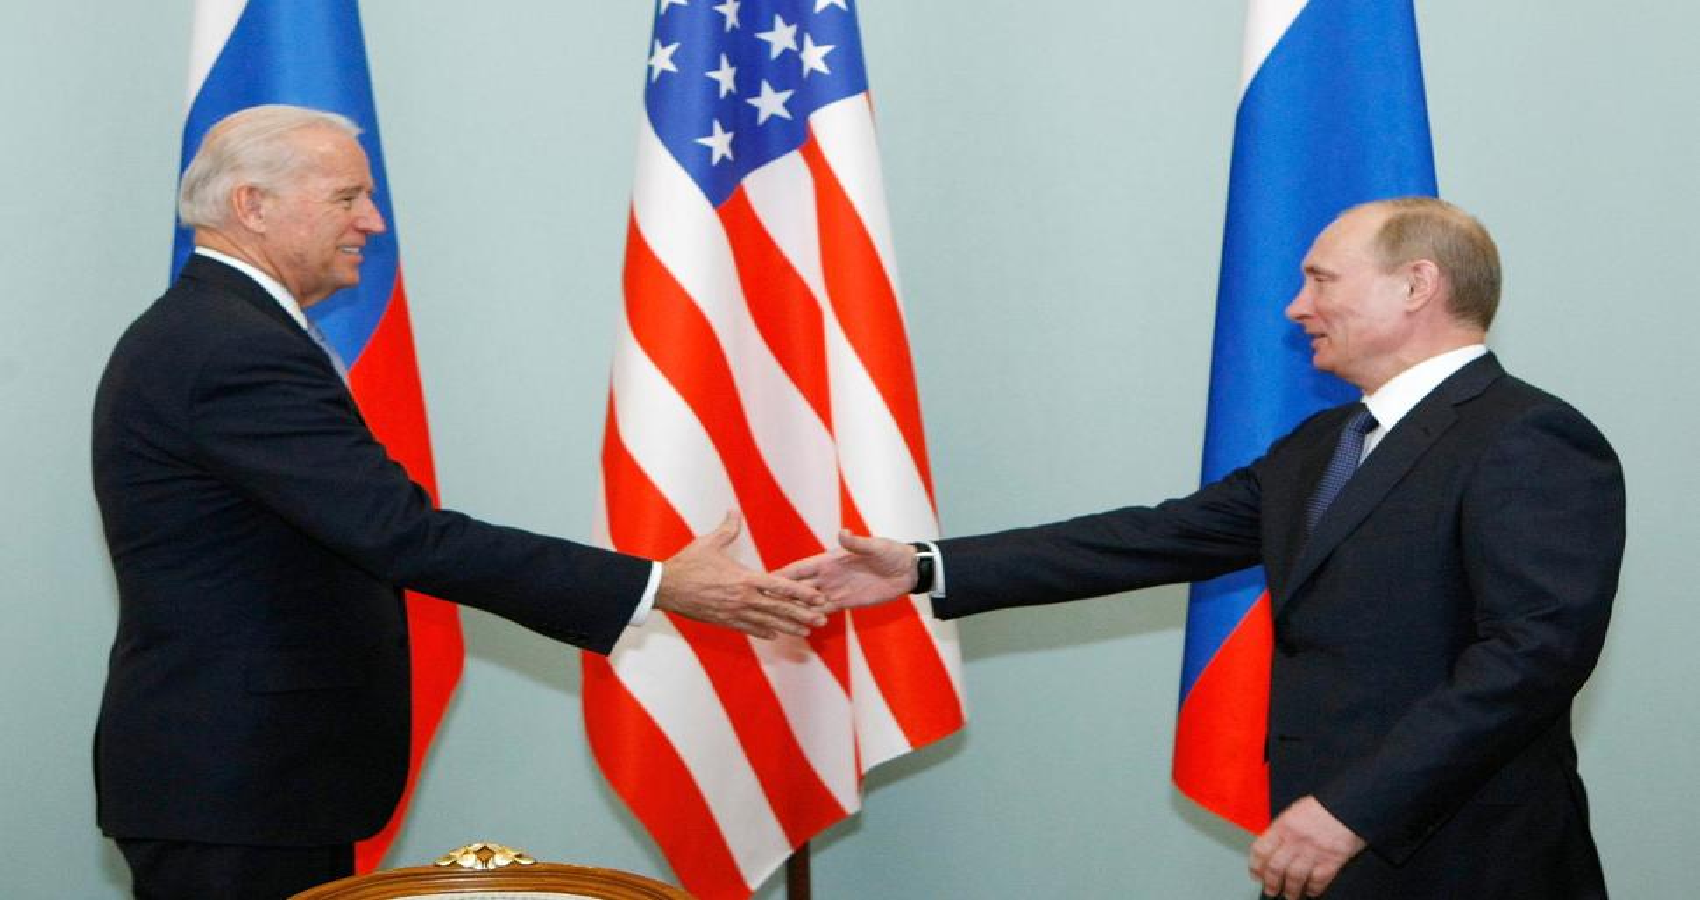 Amidst Tensions, Biden-Putin Summit Planned